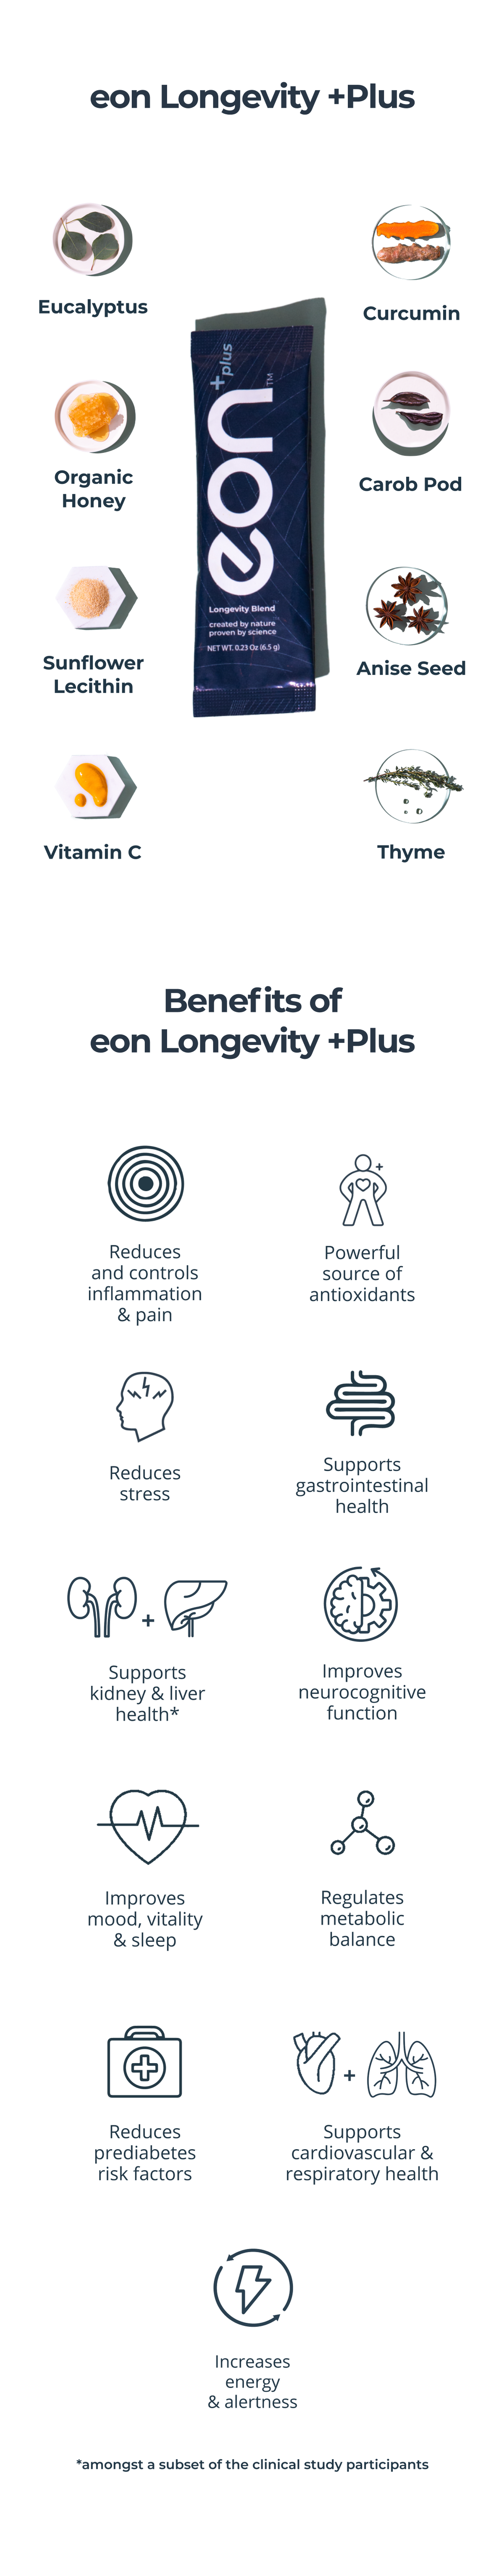 eon Longevity + Plus